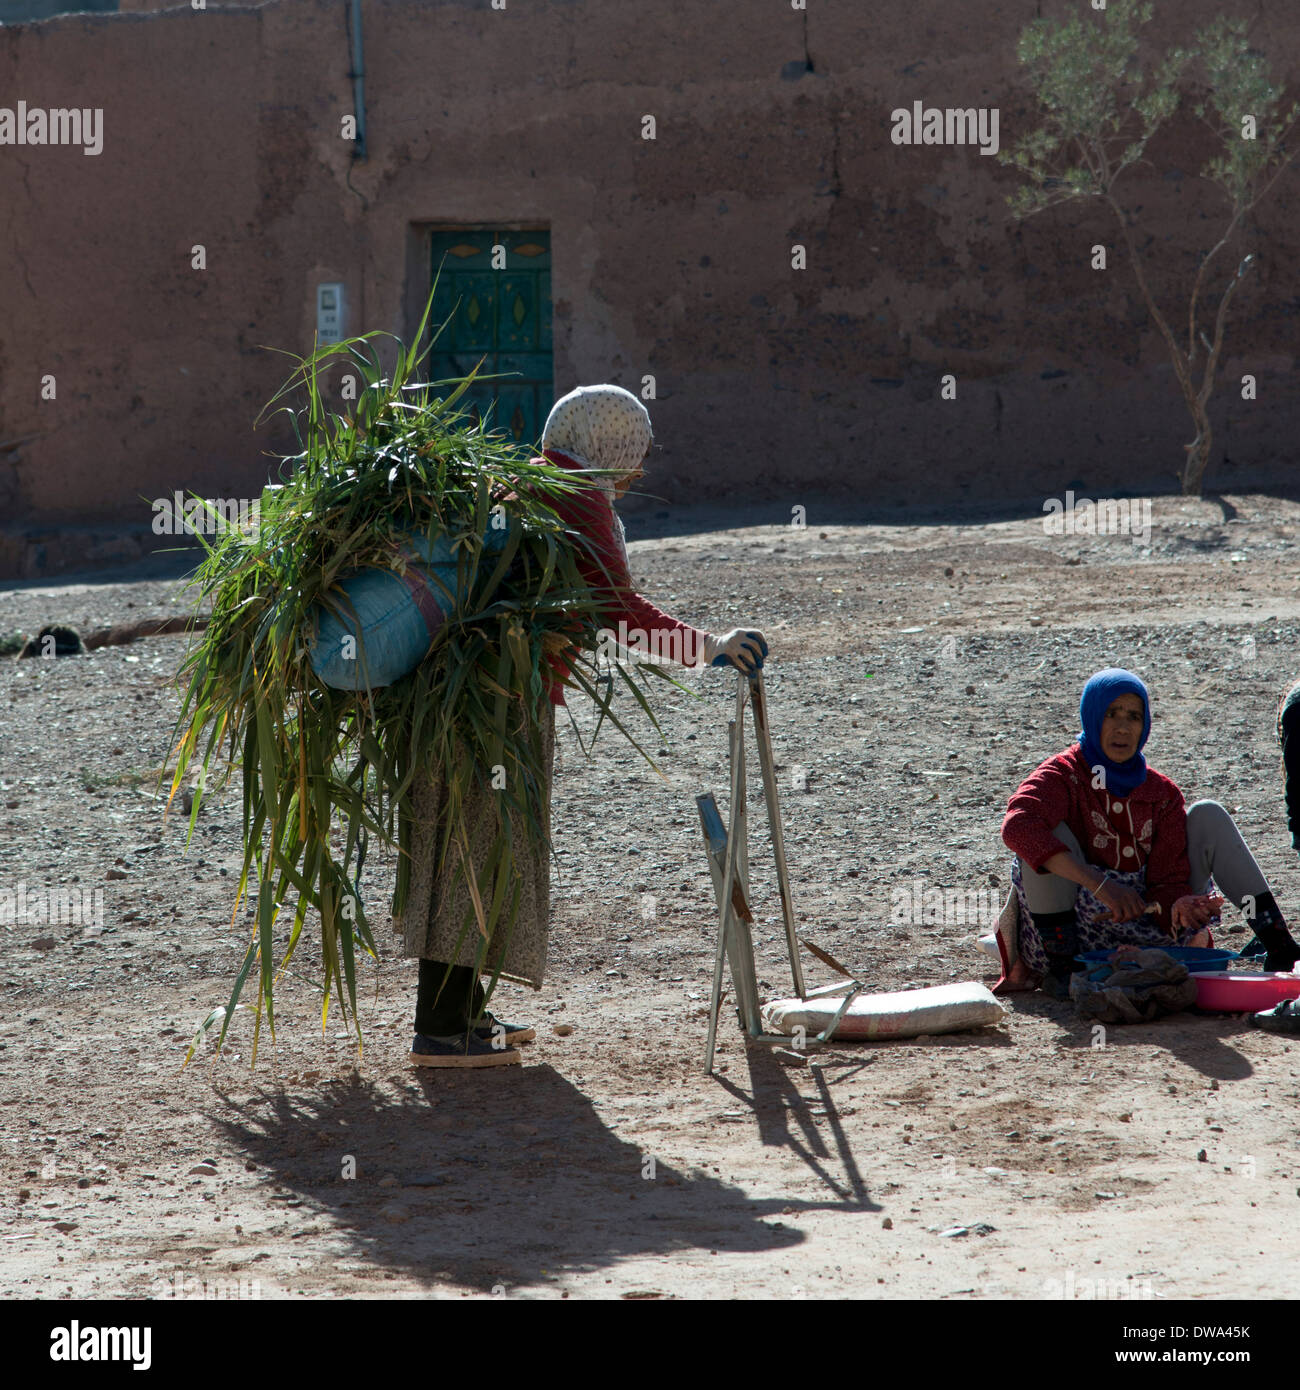 Femme transportant l'herbe sur le dos, Tabounte, Province de Ouarzazate, Maroc, Souss-Massa-Draa Banque D'Images